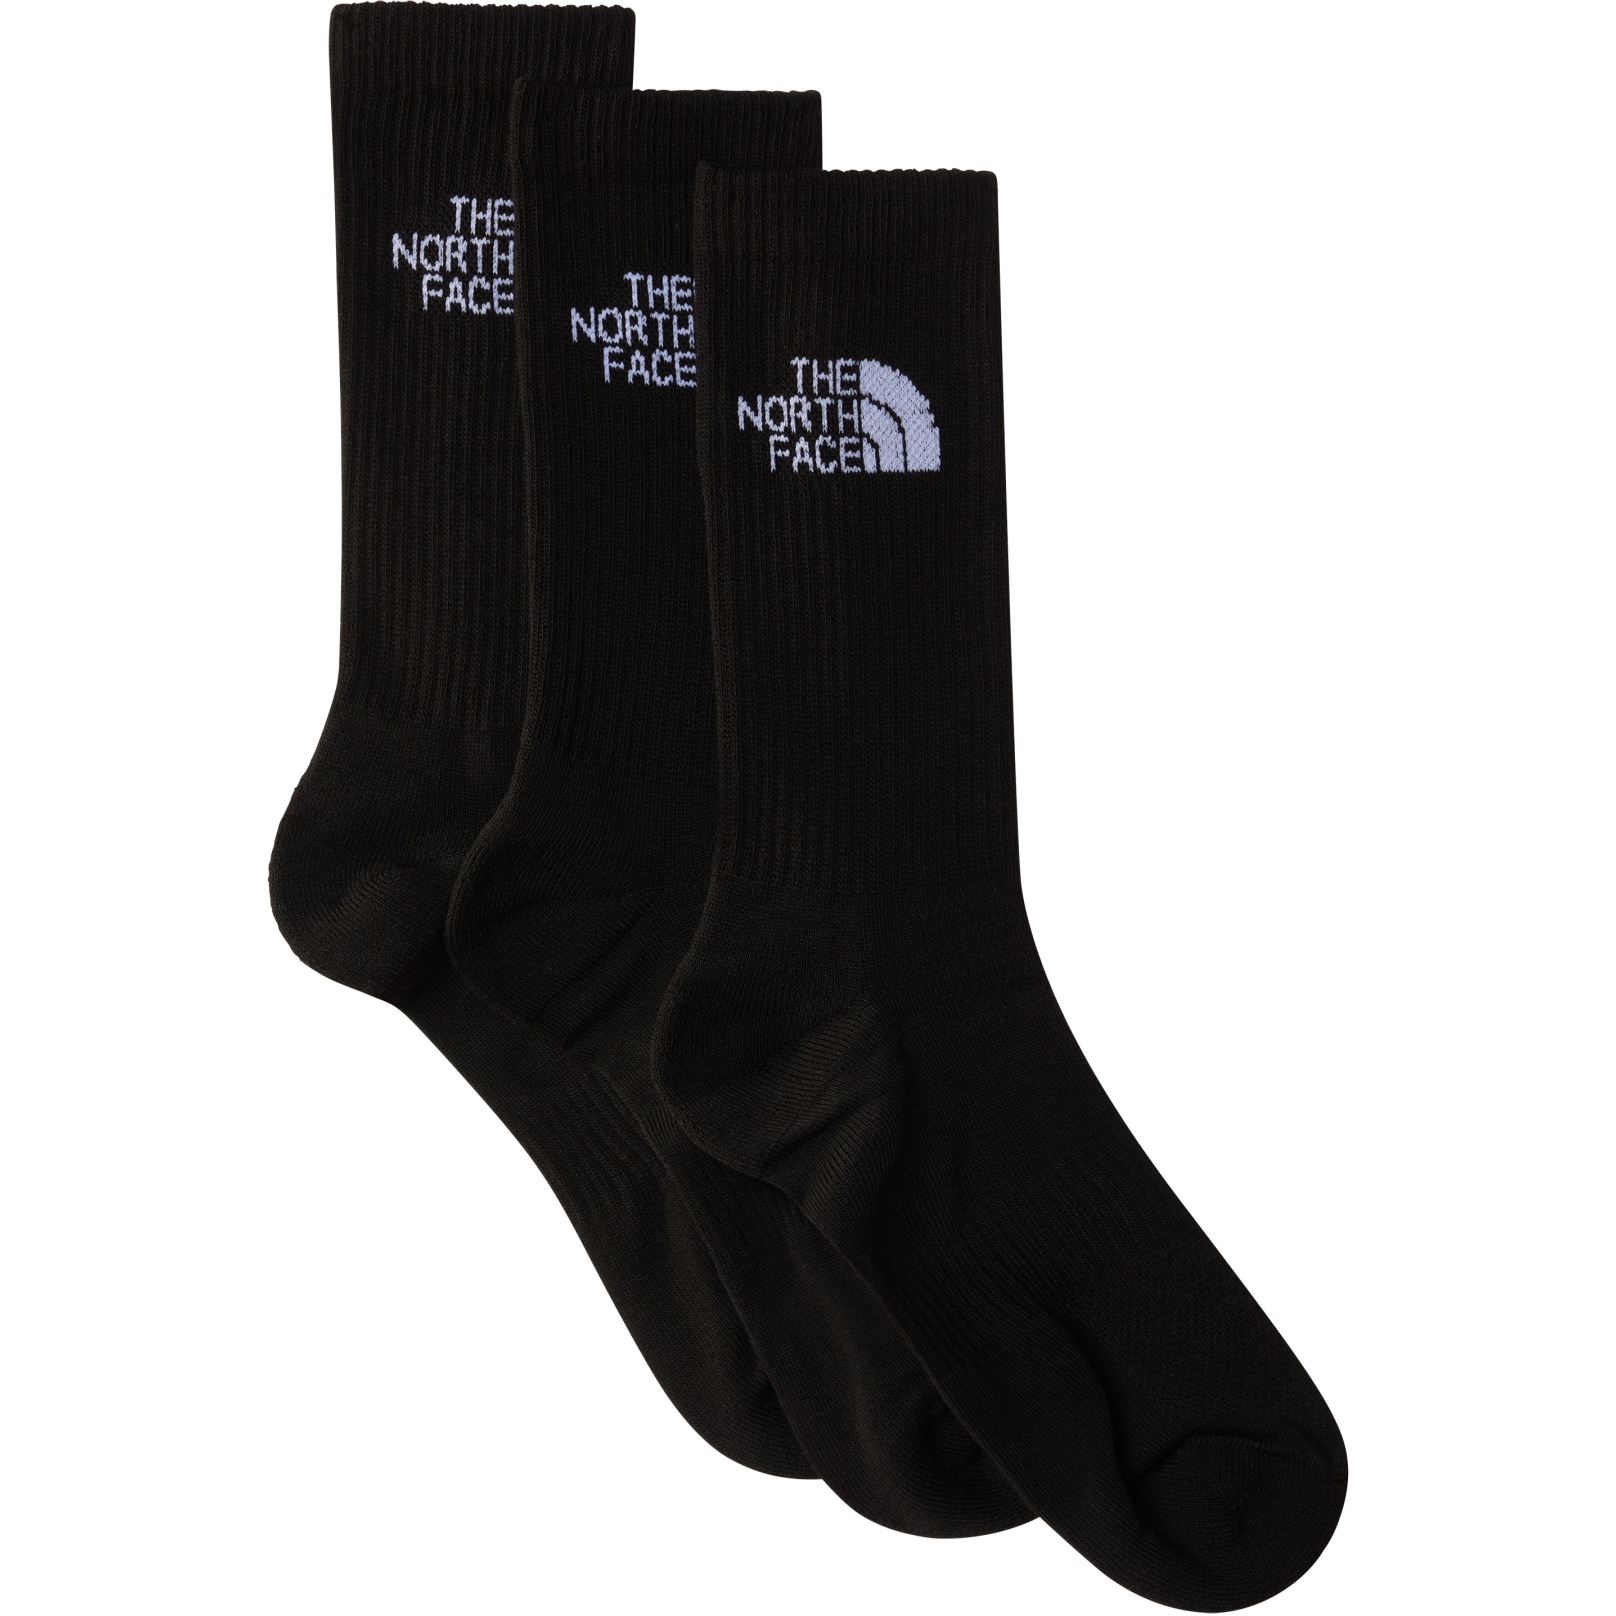 Buy Black Knee High Heart Socks 5 Pack 6-8.5, Underwear, socks and tights